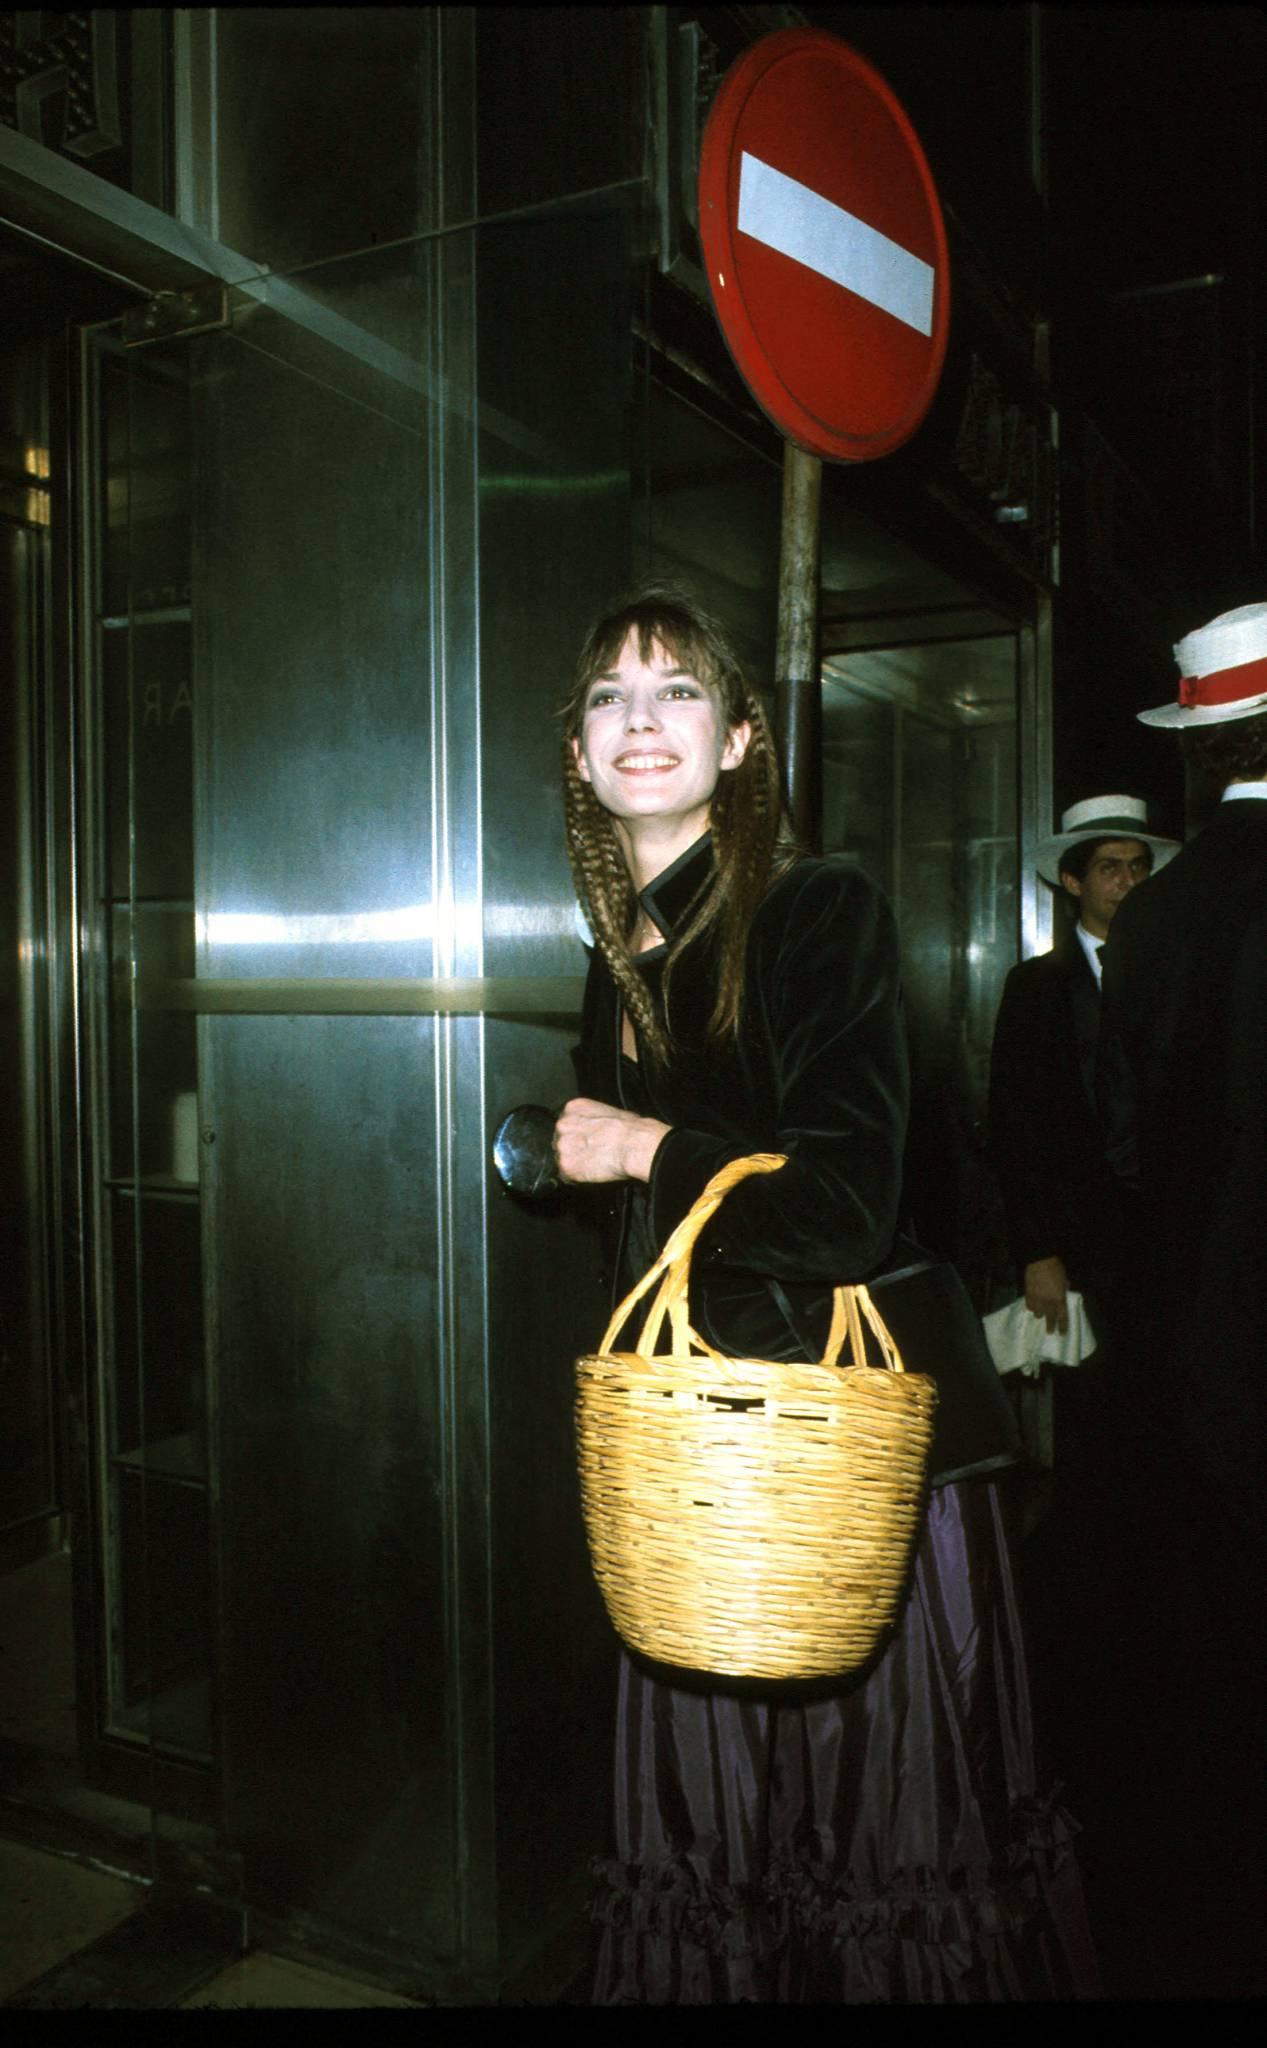  Jane Birkin, 1977 rok. (Fot. AGIP/Rue des Archives/Forum)